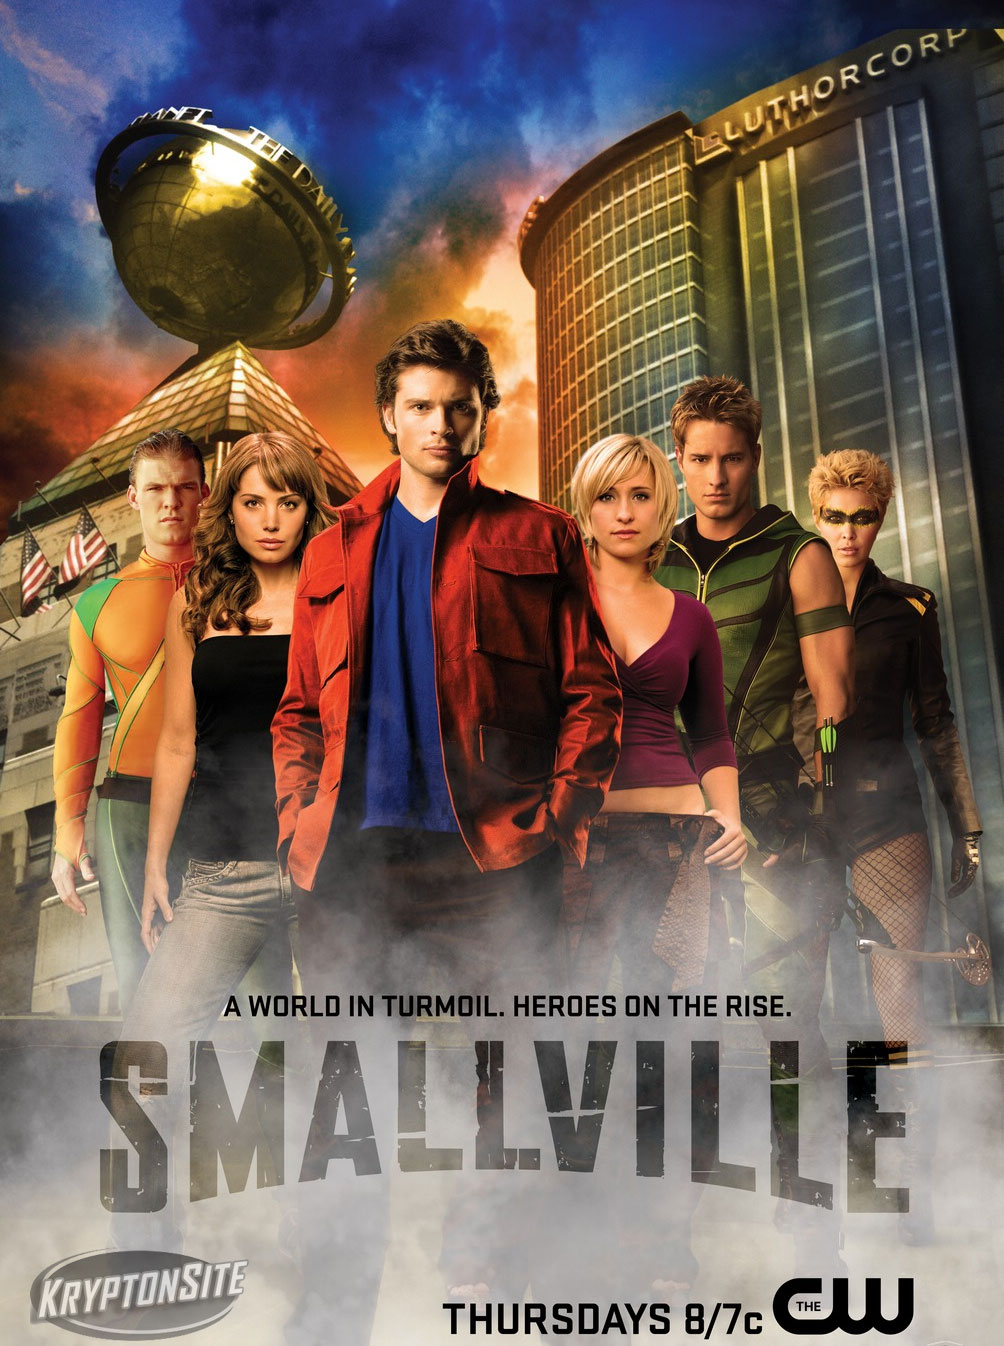 http://tvmediablog.files.wordpress.com/2008/10/smallville-temporada-8-poster.jpg